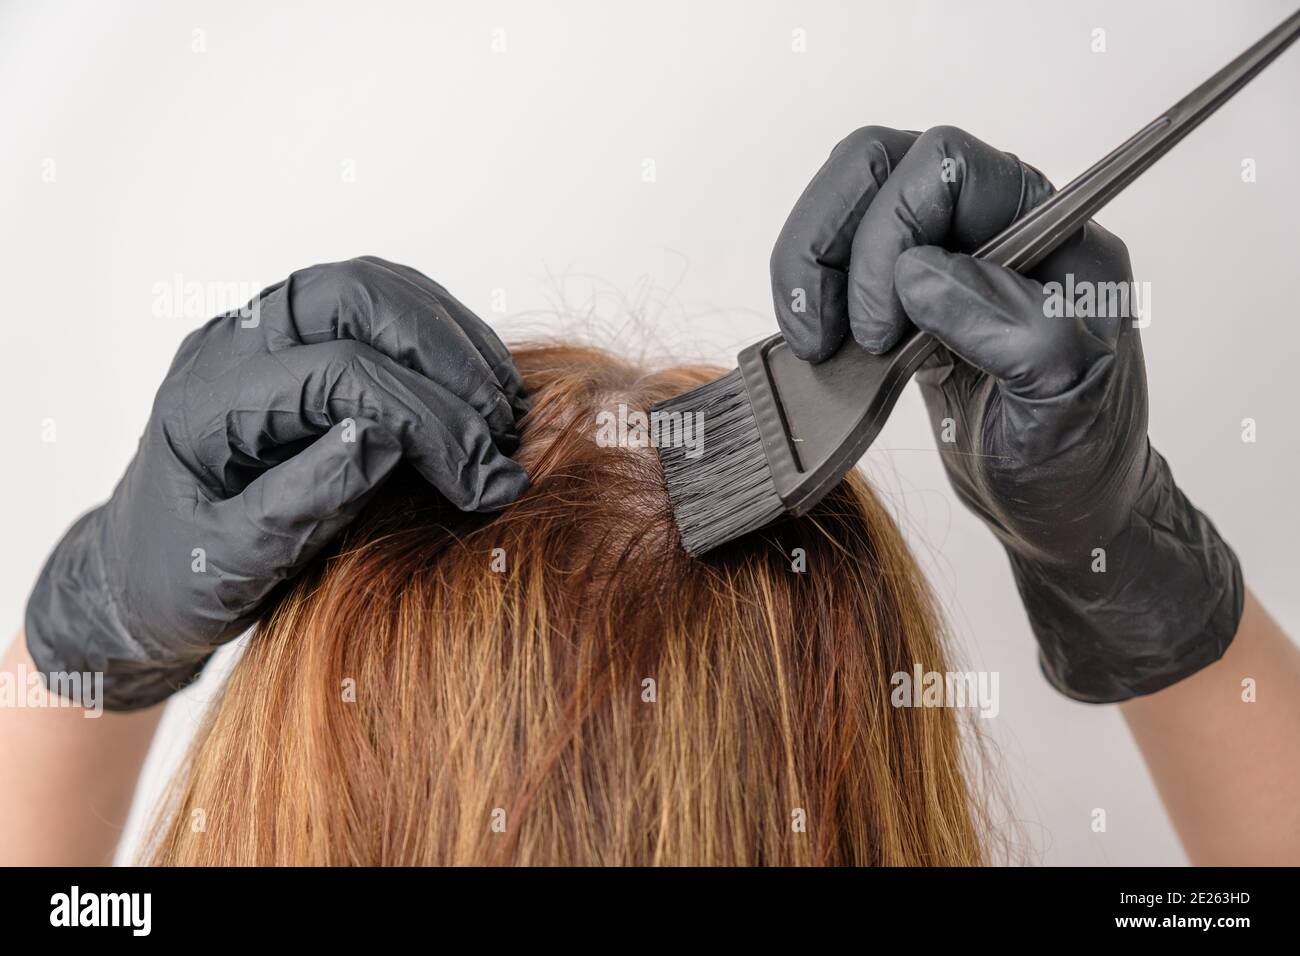 Frau färben Haarwurzeln mit einem Pinsel. Färben von grauen Haarwurzeln mit einer komplexen Haarfärbung oder Balayage zu Hause. Stockfoto